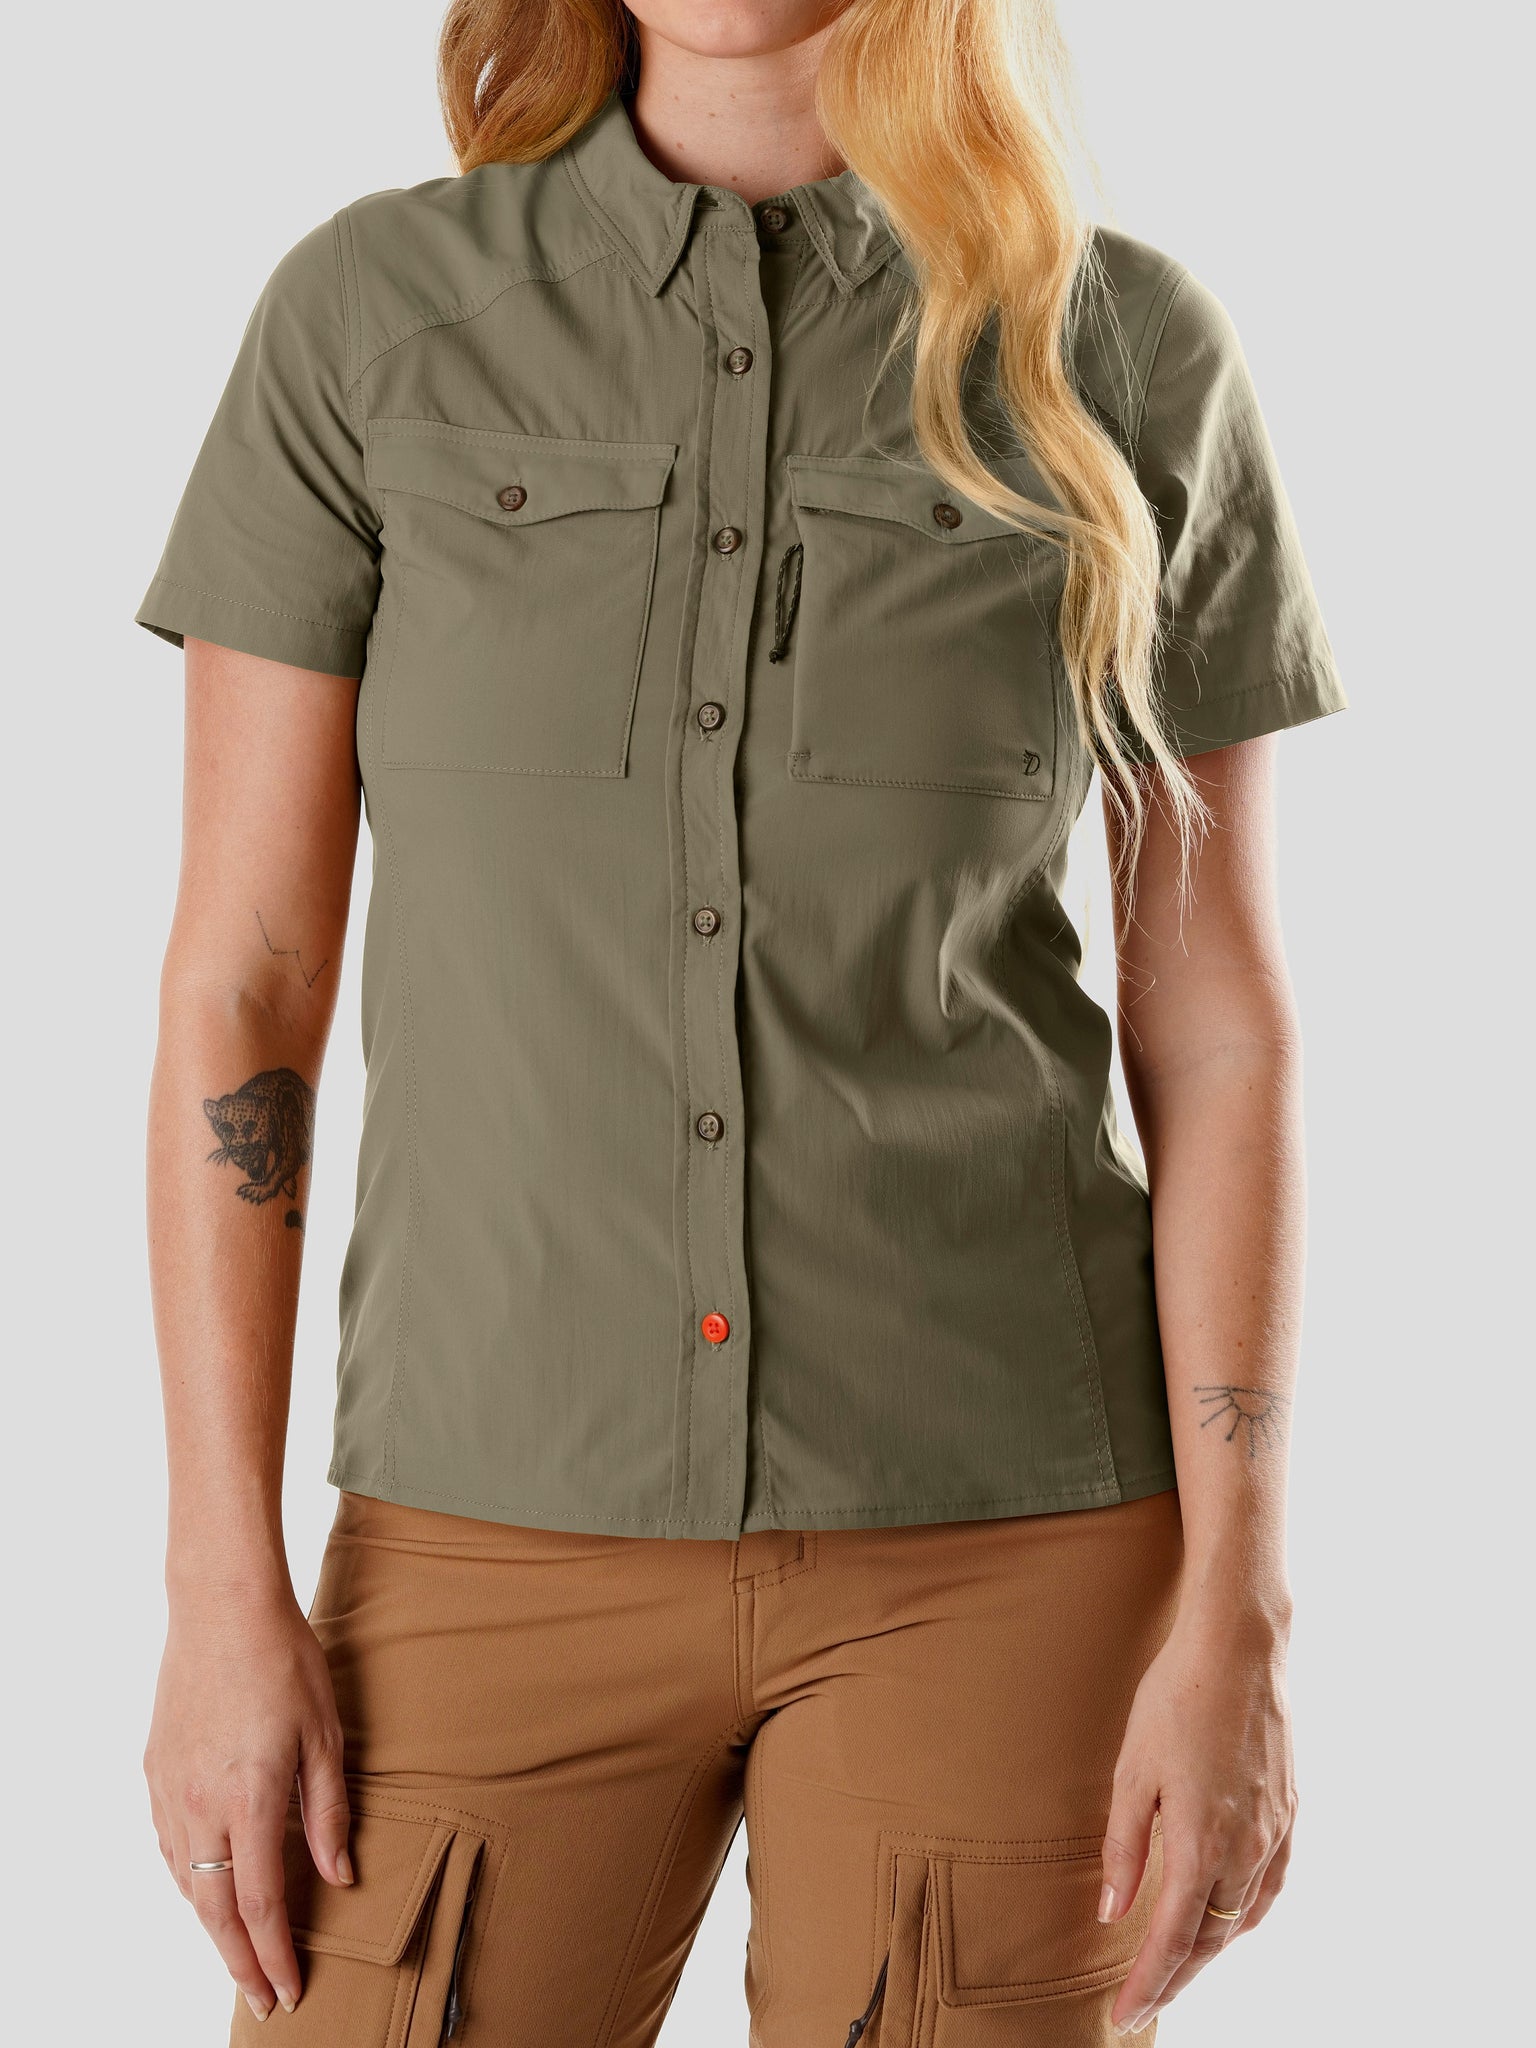 Women's Hunting Shirt Short Sleeve - Sagebrush